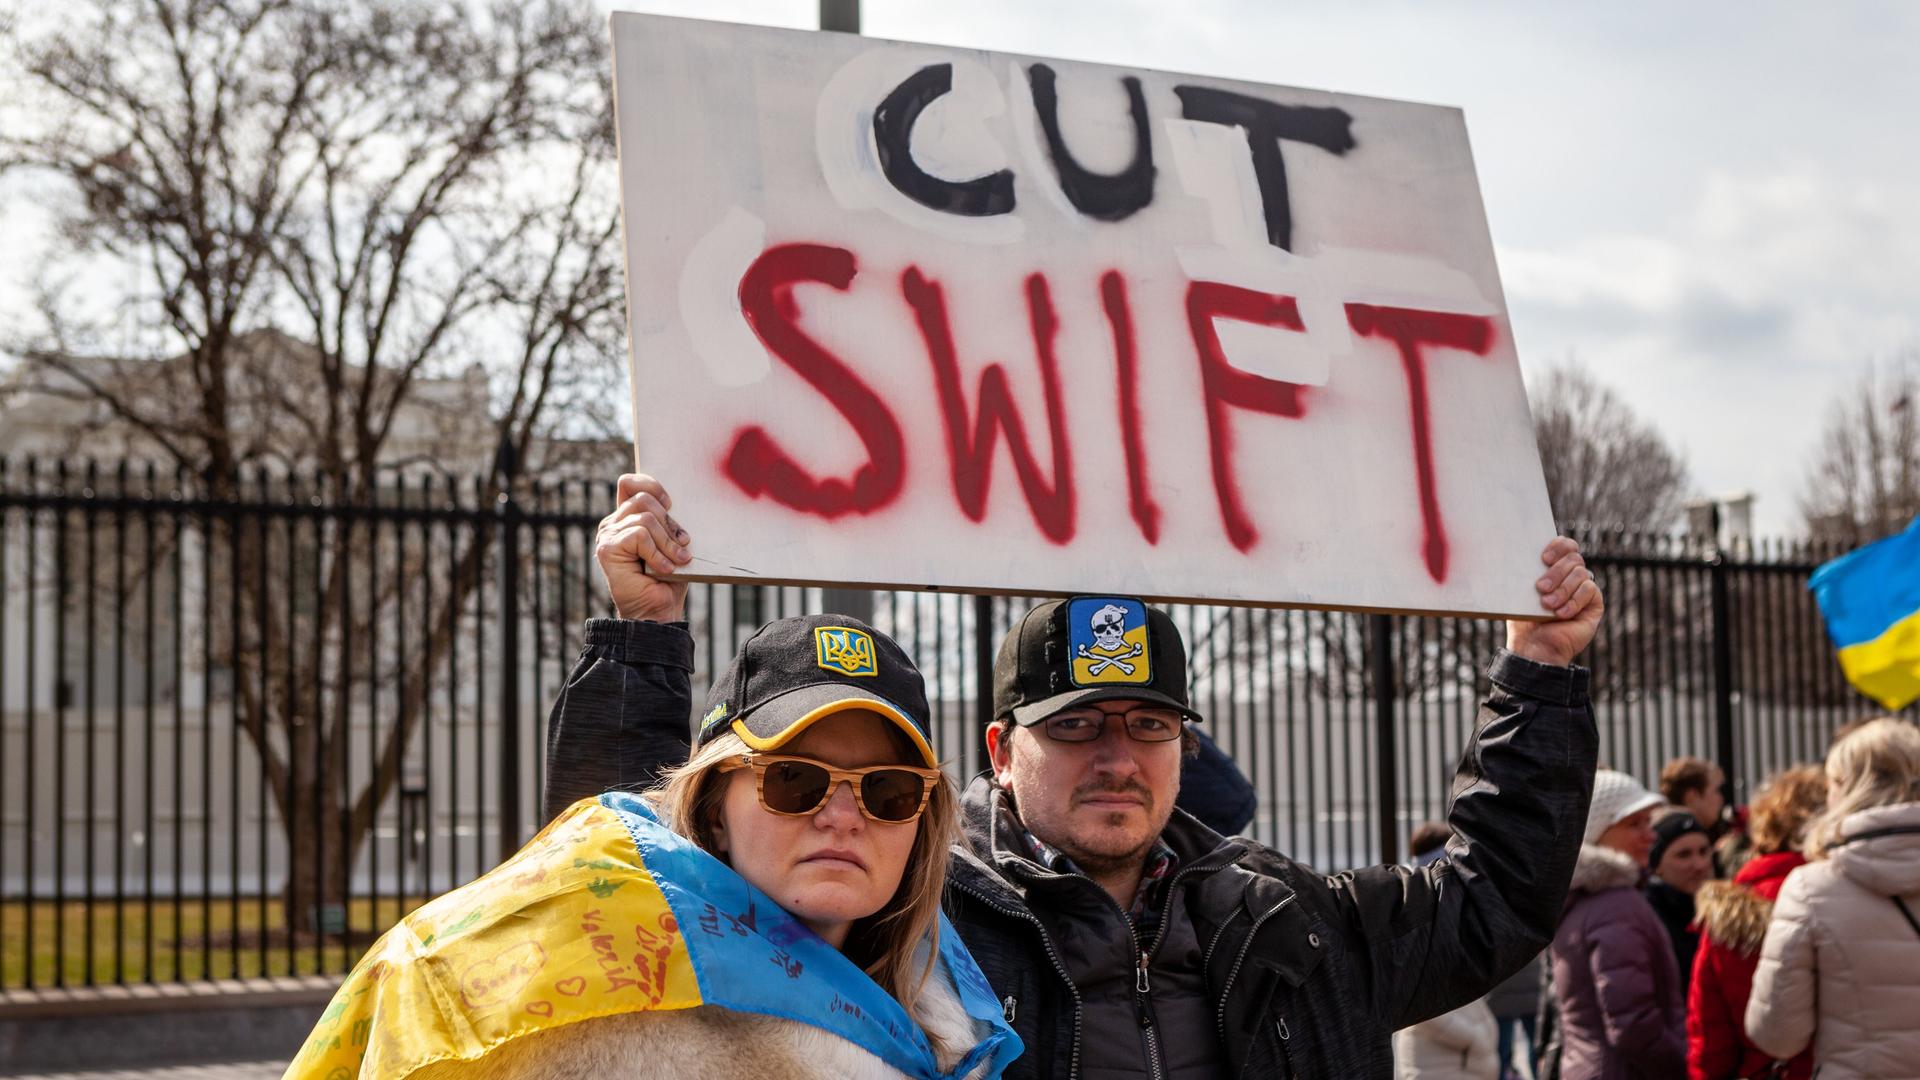 Februar 2022: Ukrainische Demonstranten protestieren vor dem Weißen Haus gegen die Invasion Russlands in der Ukraine und fordern den Ausschluss Russlands auf dem SWIFT-System